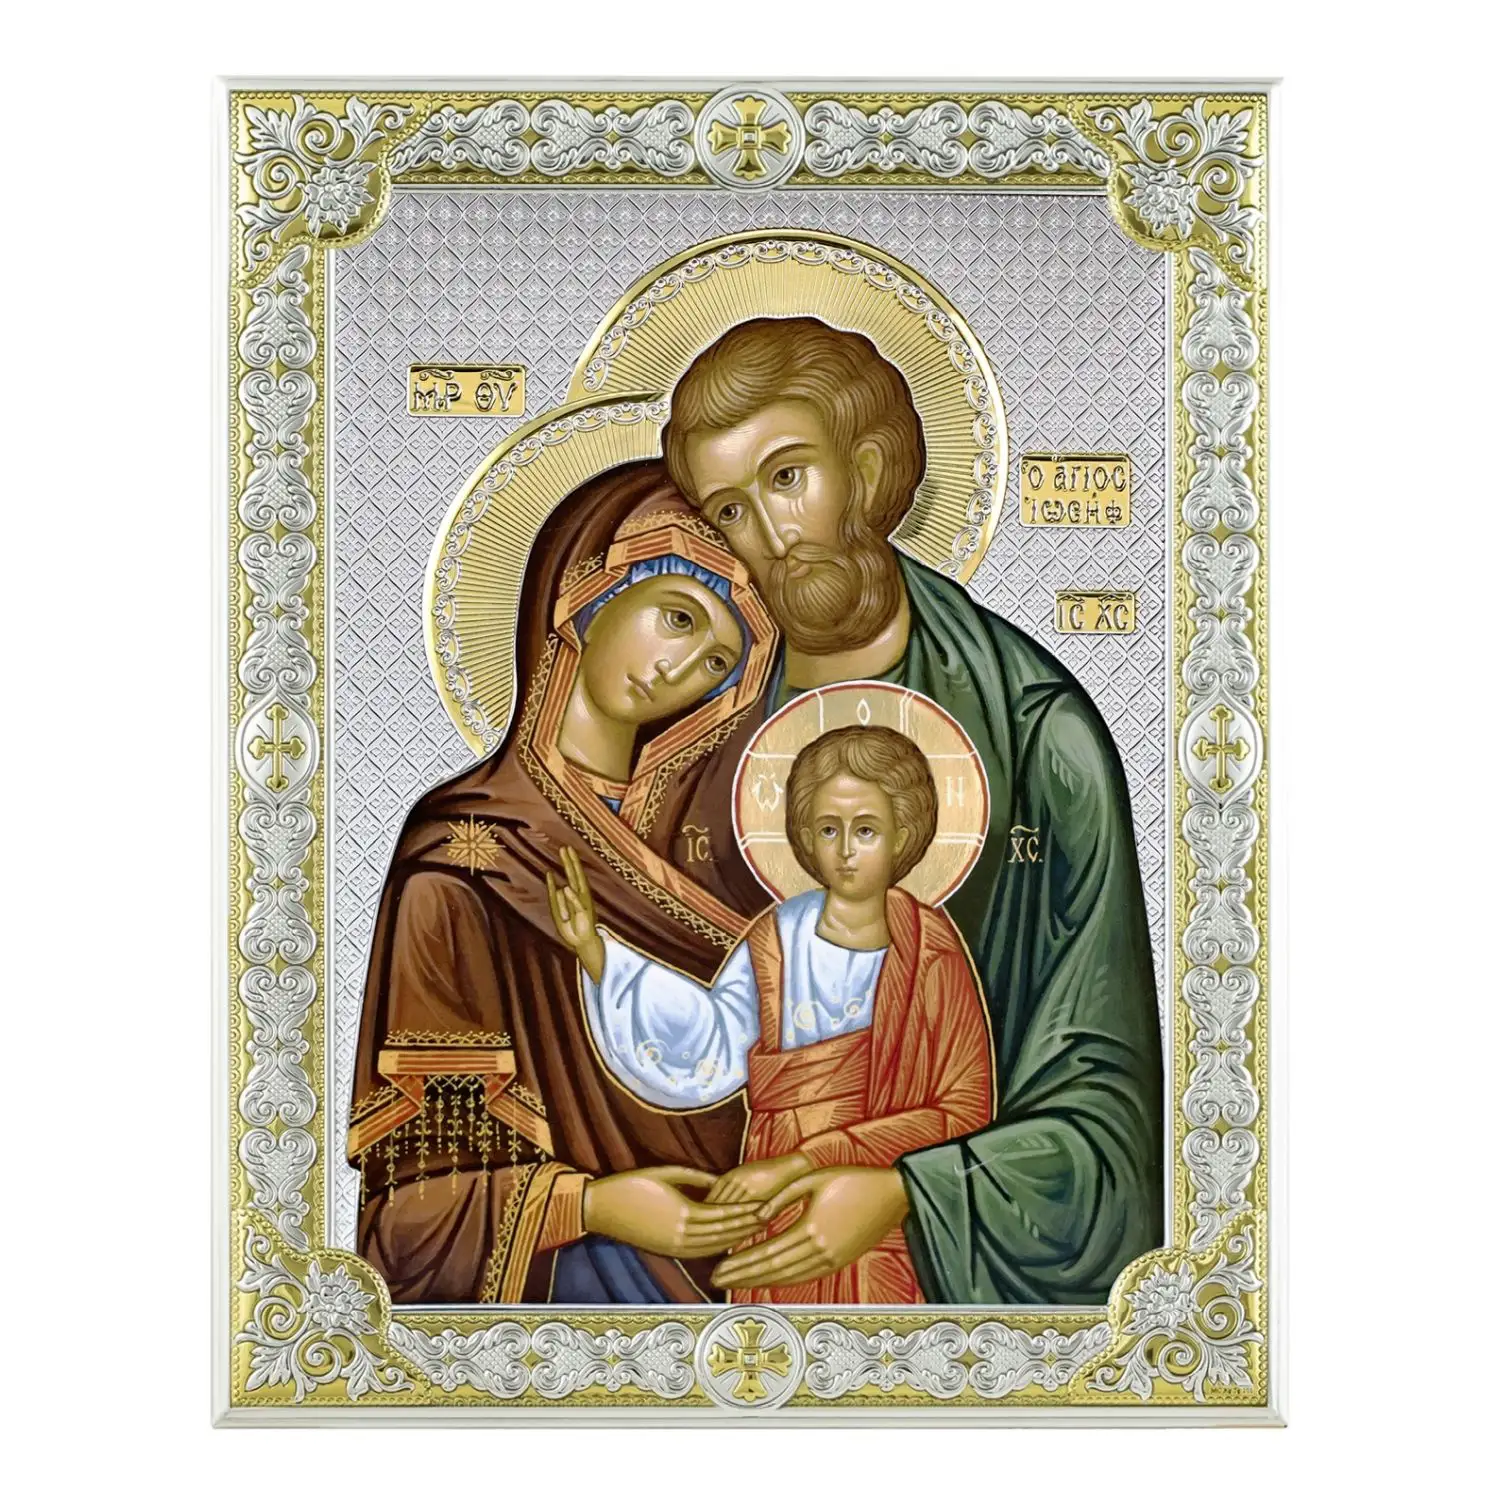 Икона Святое семейство (20*26) икона beltrami святое семейство 22 1 х 26 8 см